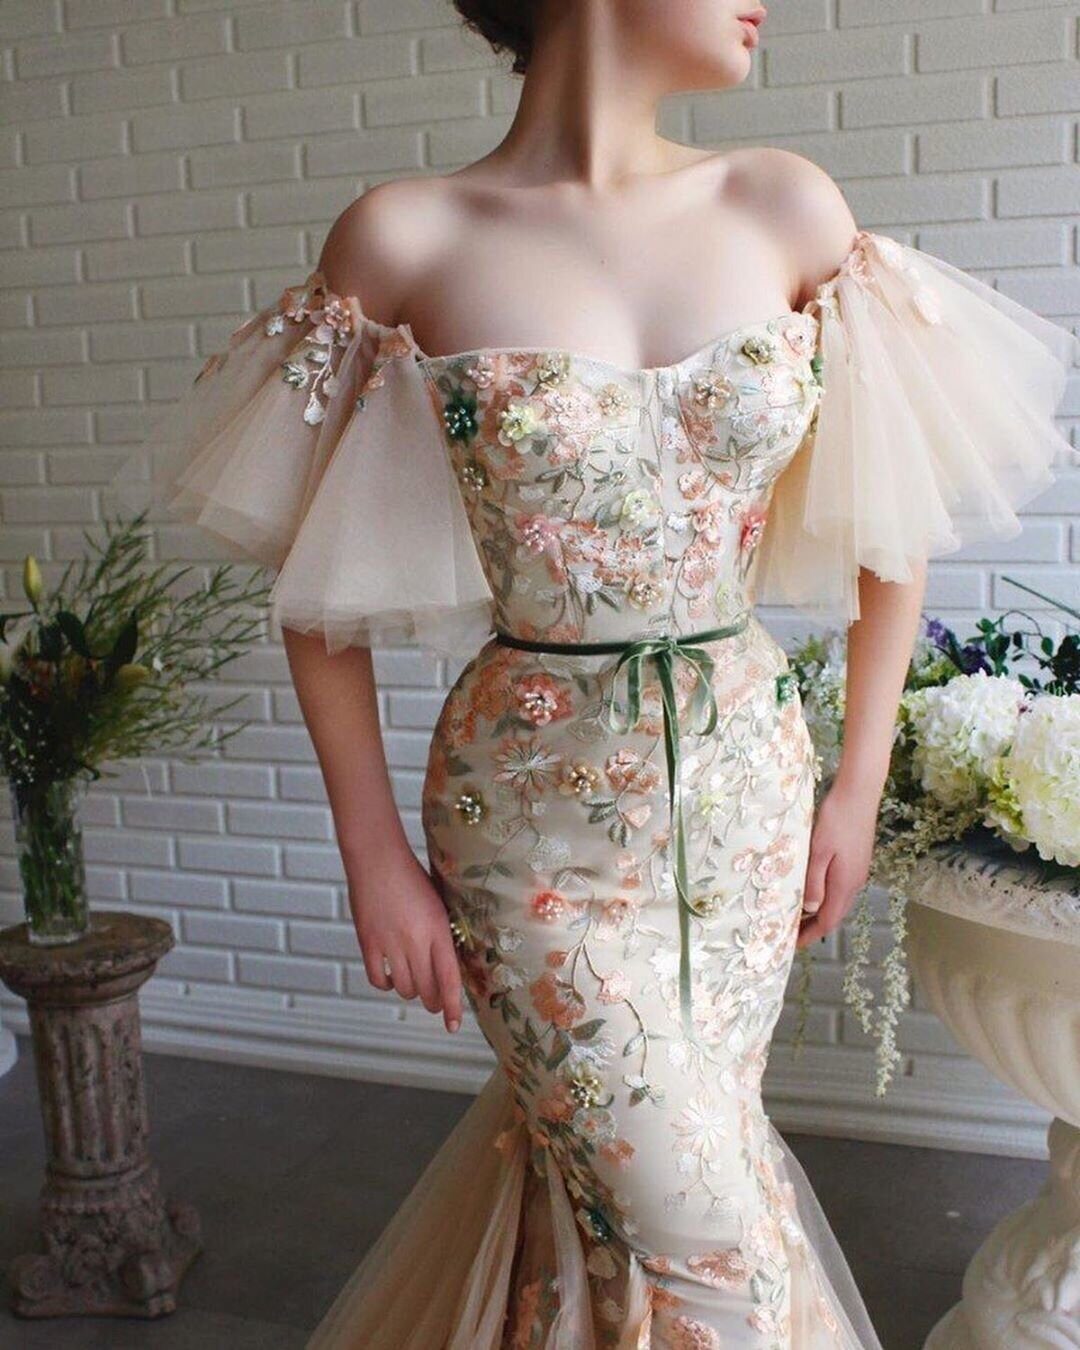 Просто сказочные, шикарные платья турецкого дизайнера Teuta Matoshi Duriqi 😍 Как вам?